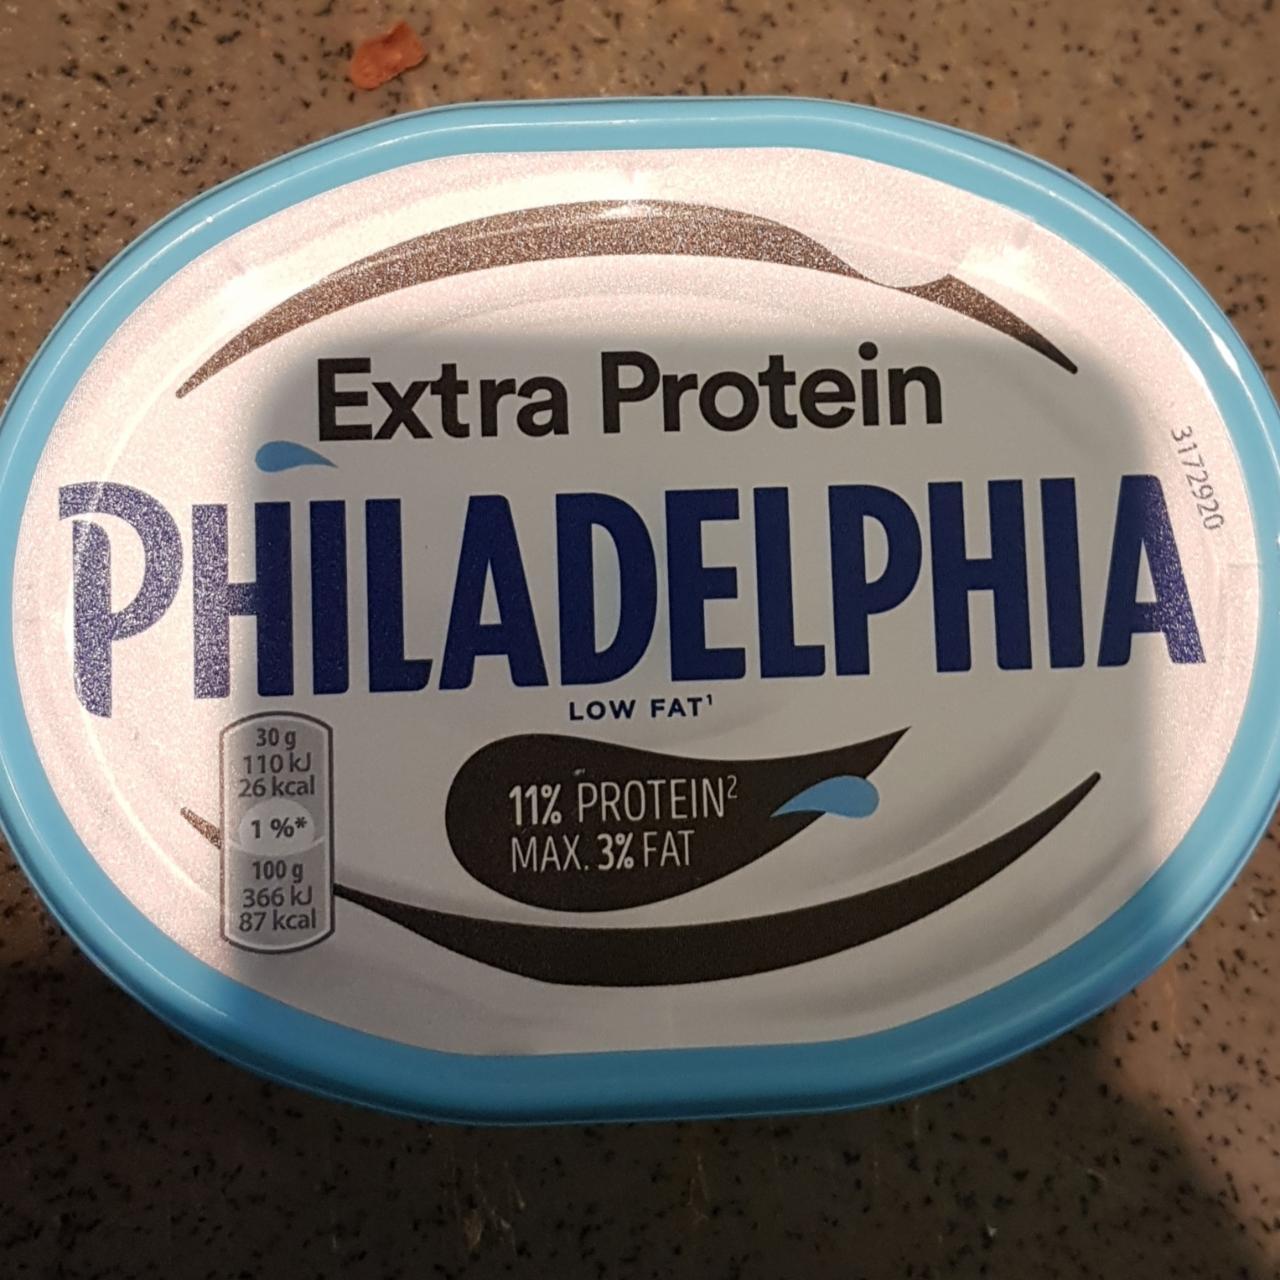 Фото - Филадельфия протеин Extra Protein Philadelphia